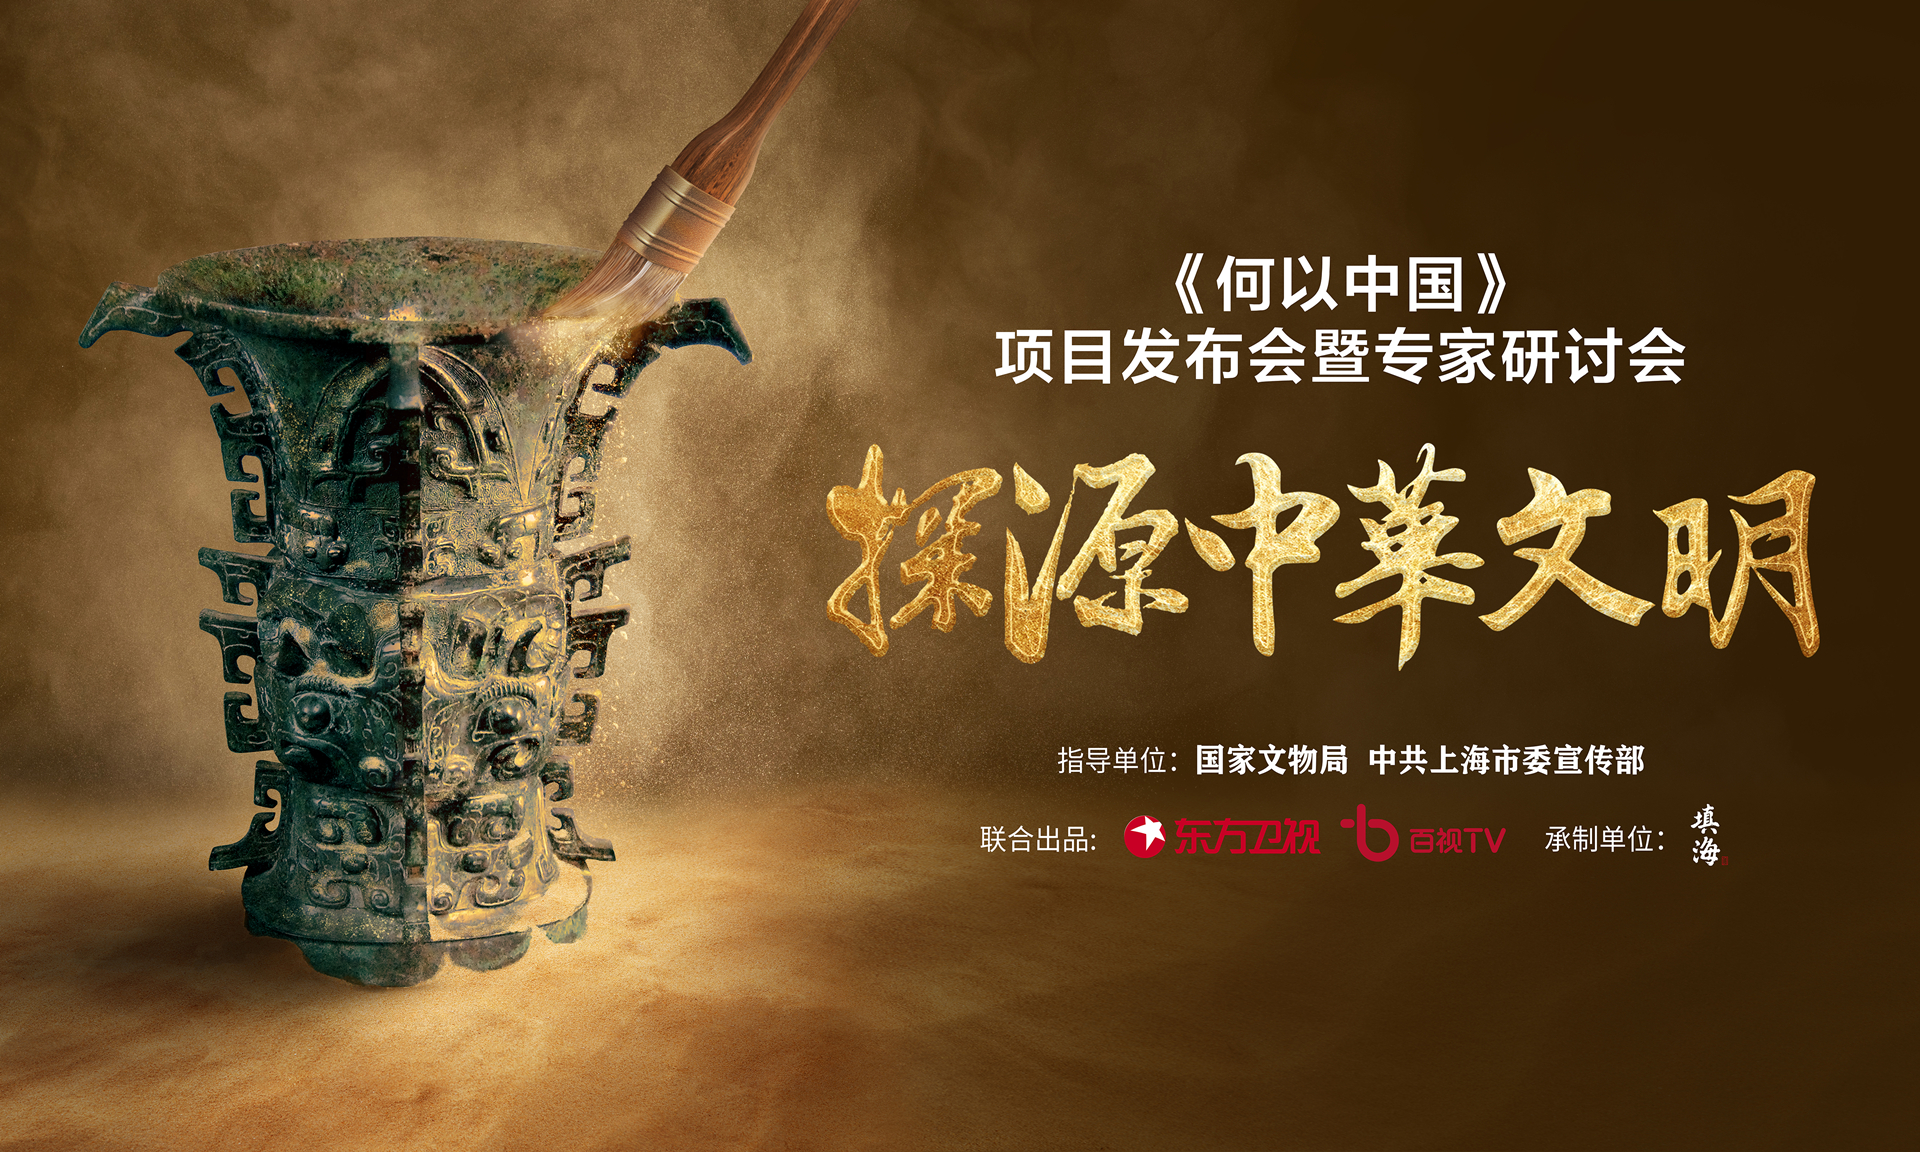 探源中华文明 大型考古题材纪录片《何以中国》正式启动(图1)